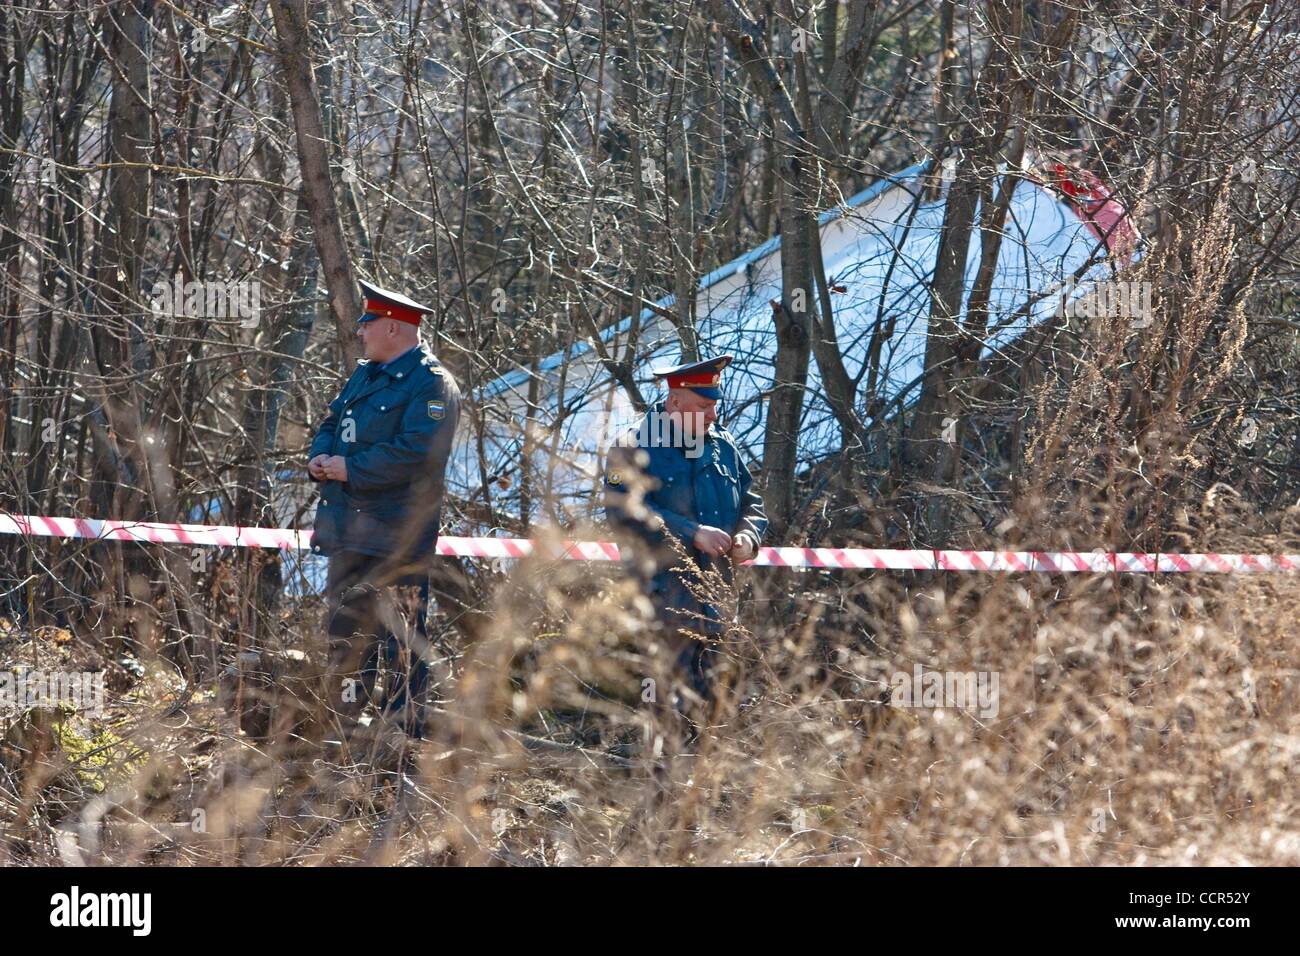 Apr 10, 2010 - Smolensk, Russie - La Police bloquer l'accident d'avion à l'aéroport militaire Severny où un fragment (une aile) de l'avion a atterri TU-154 s'est écrasé. Un avion transportant le président polonais Kaczynski et des dizaines des plus grands leaders politiques et militaires au lieu d'un Soviétique massac Banque D'Images